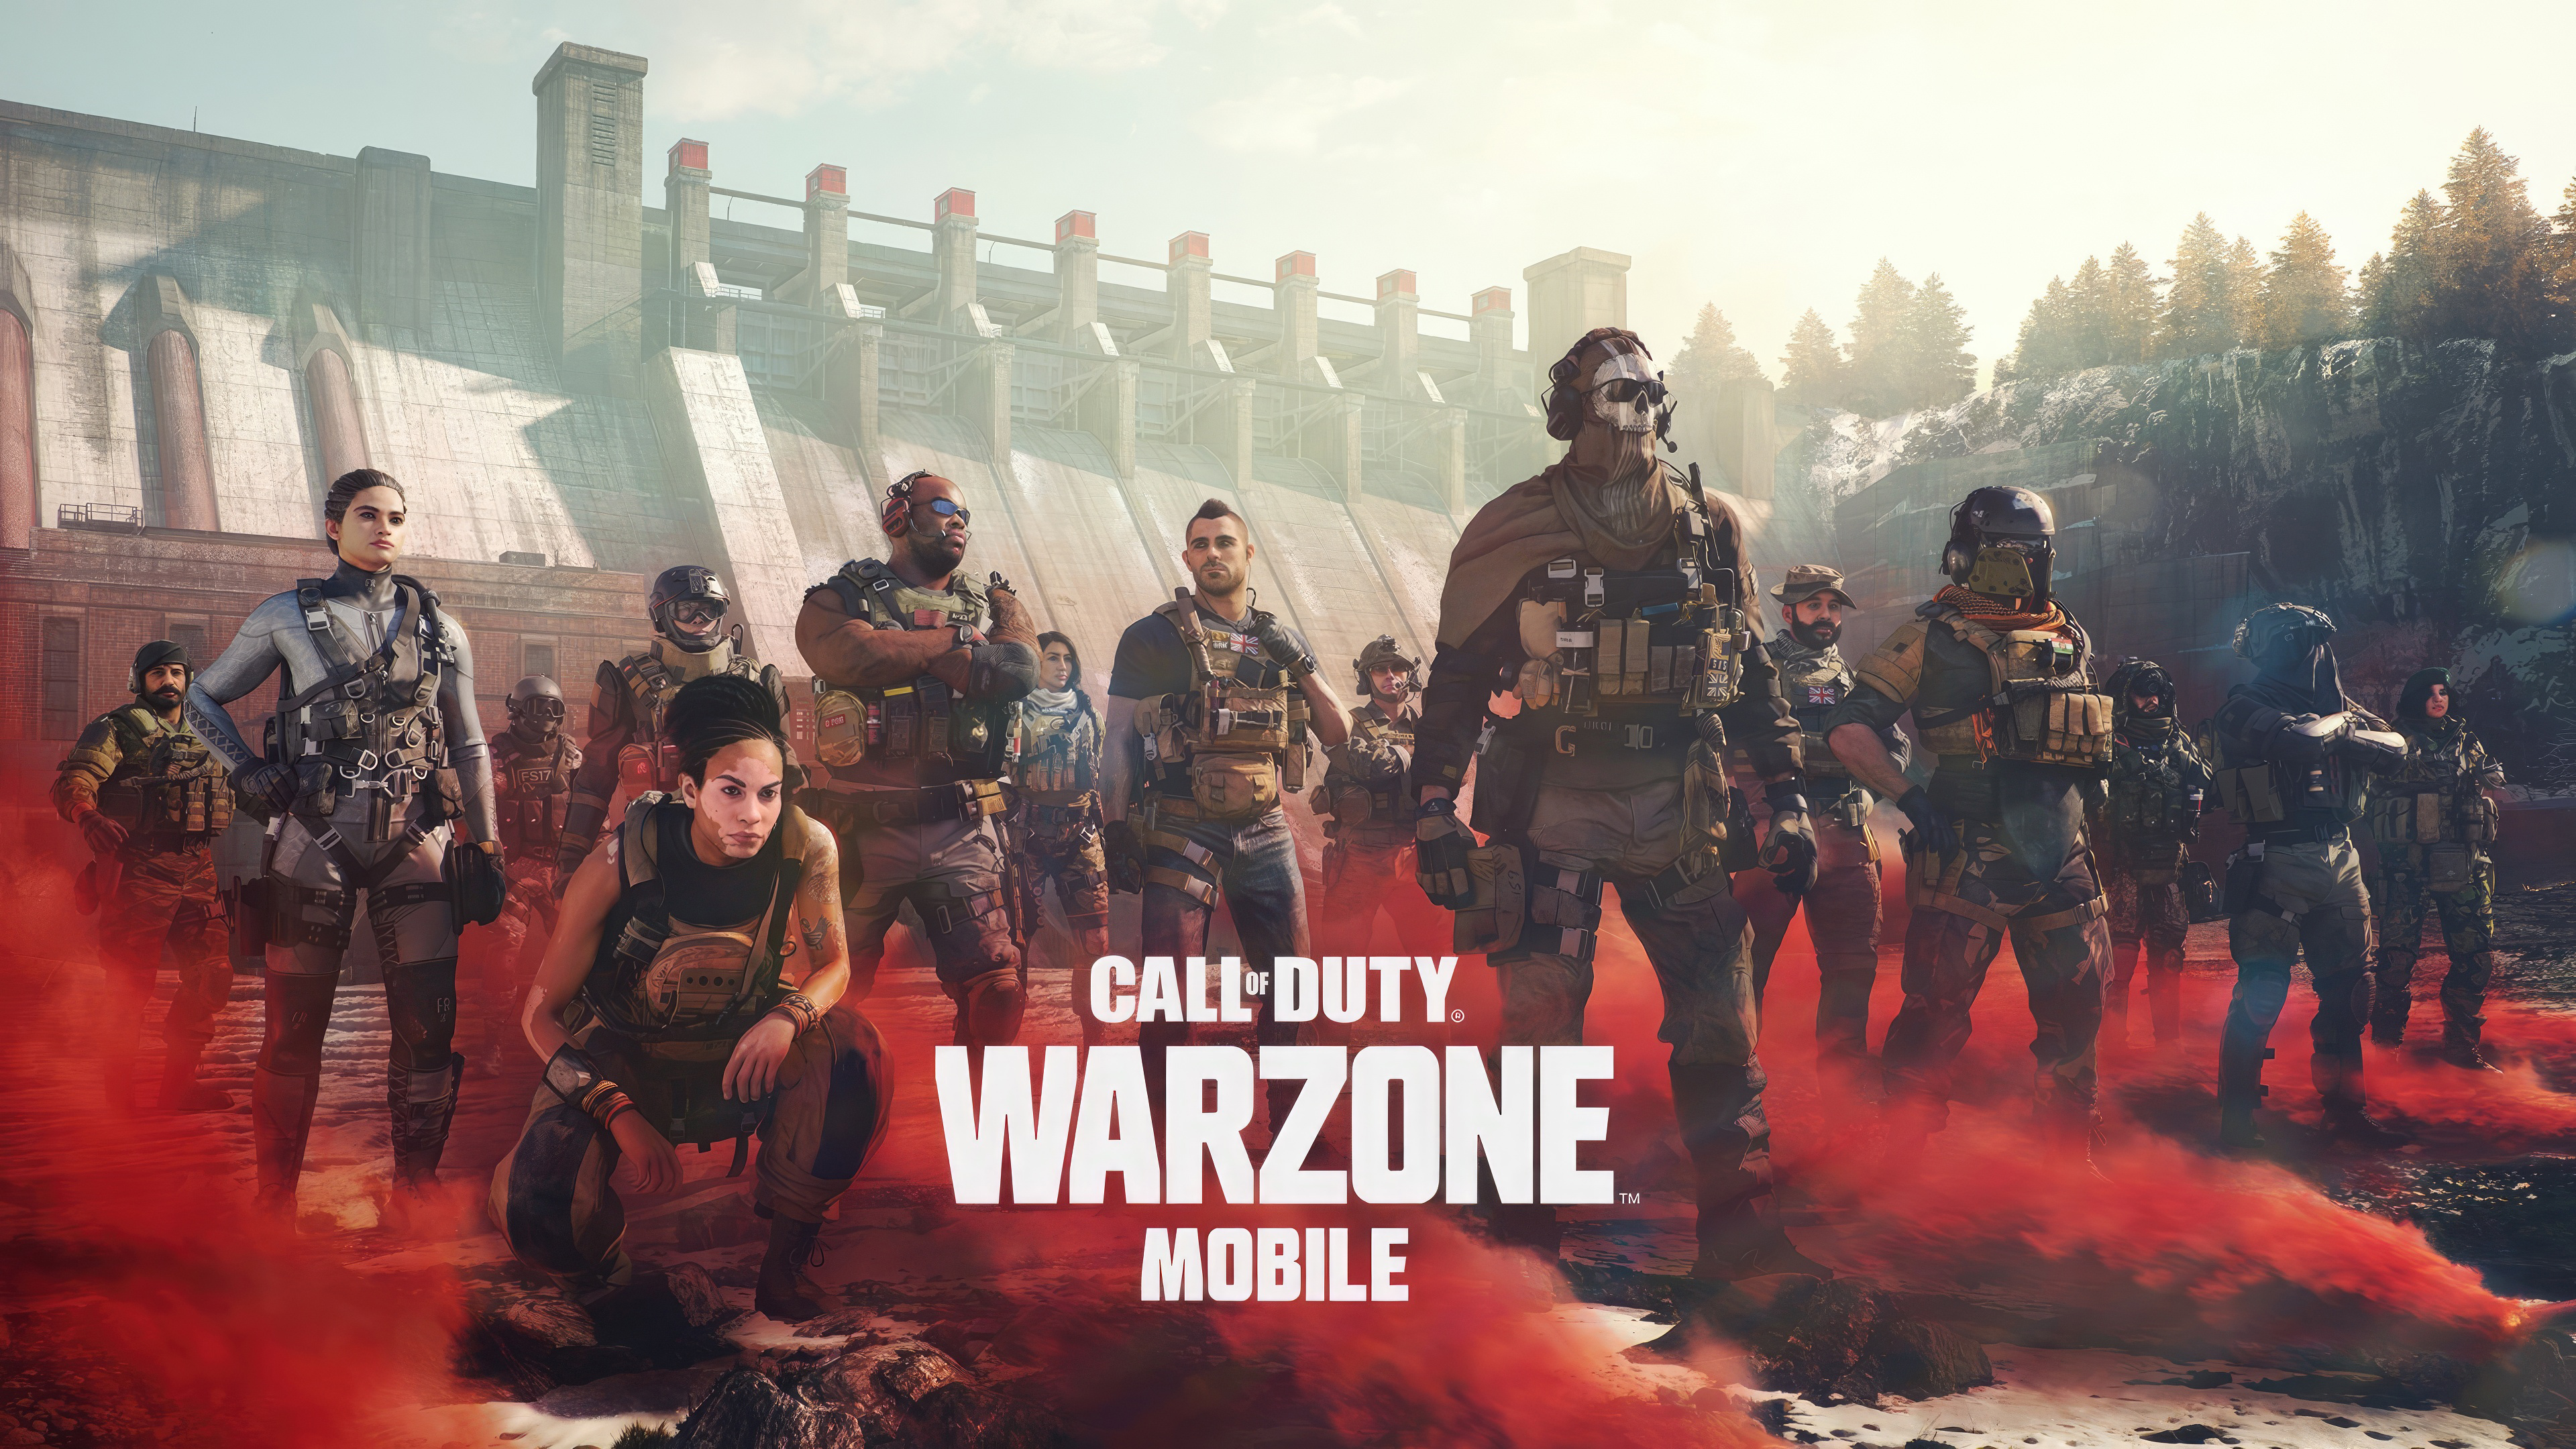 Giải mã cơn sốt Call of Duty: Warzone, sinh sau đẻ muộn trong làng battle  royale nhưng tại sao lại hot như vậy?